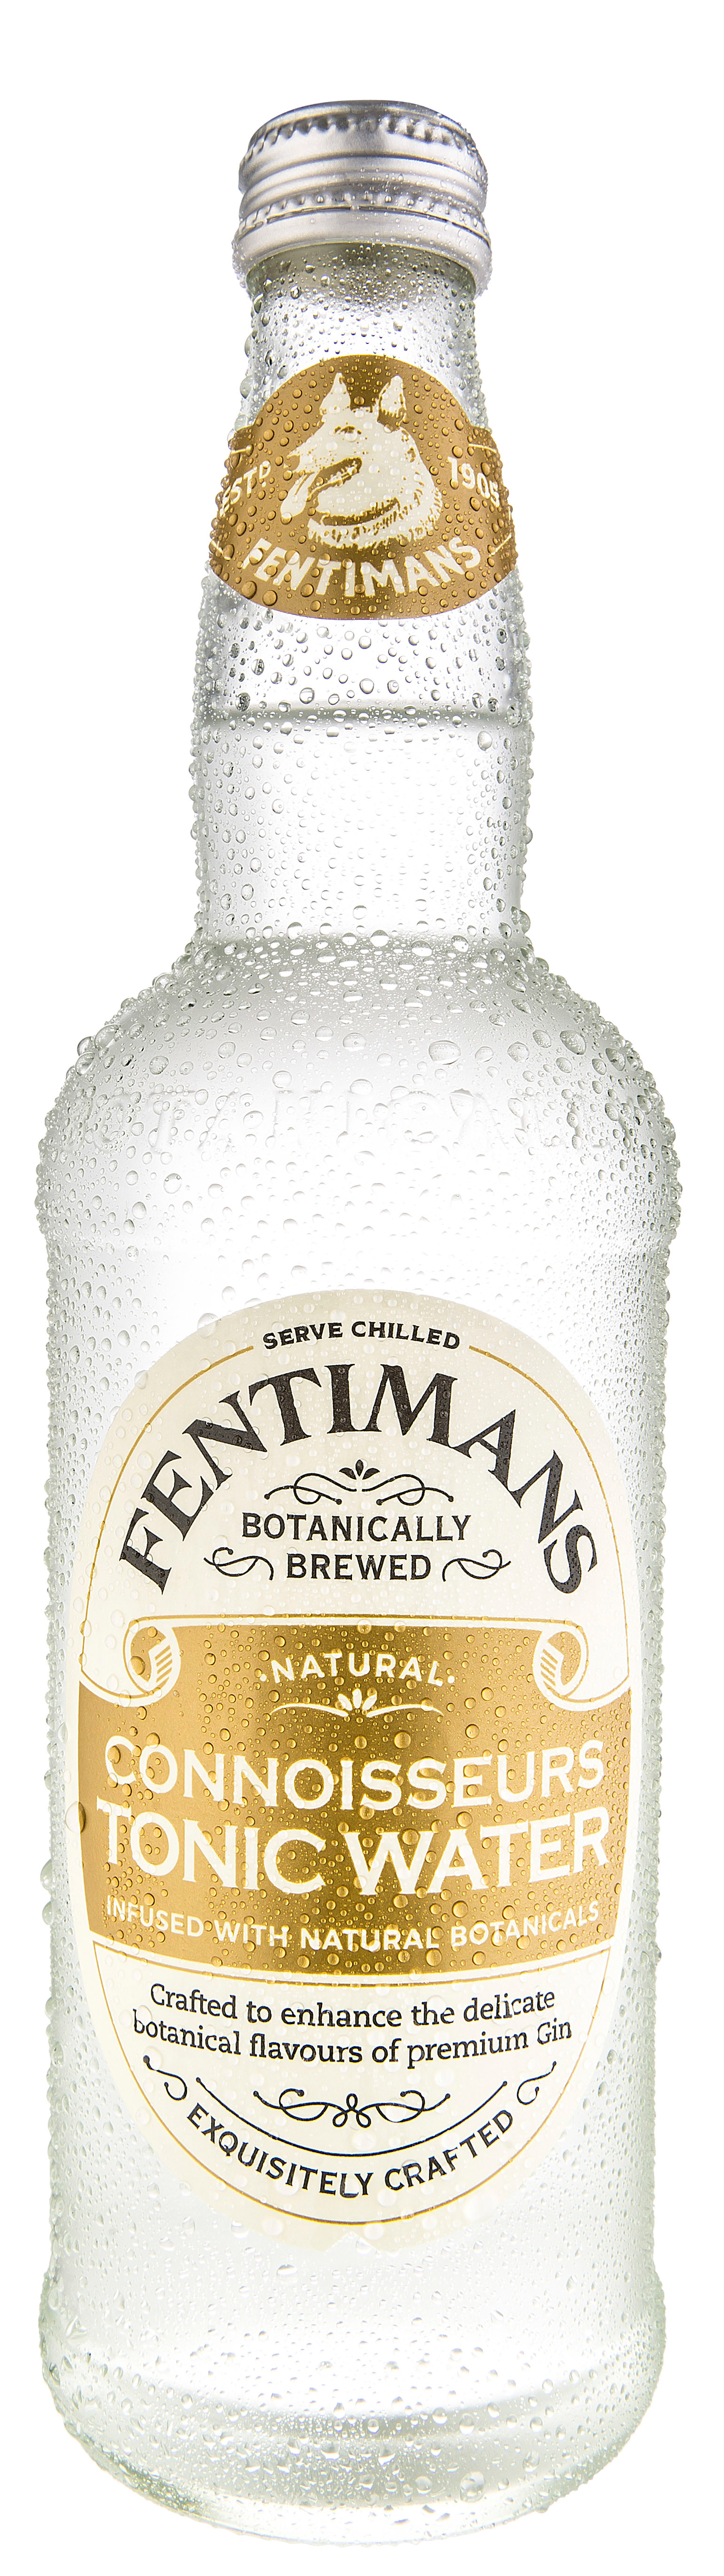 Fentimans Connoisseurs Tonic Water 0,5l